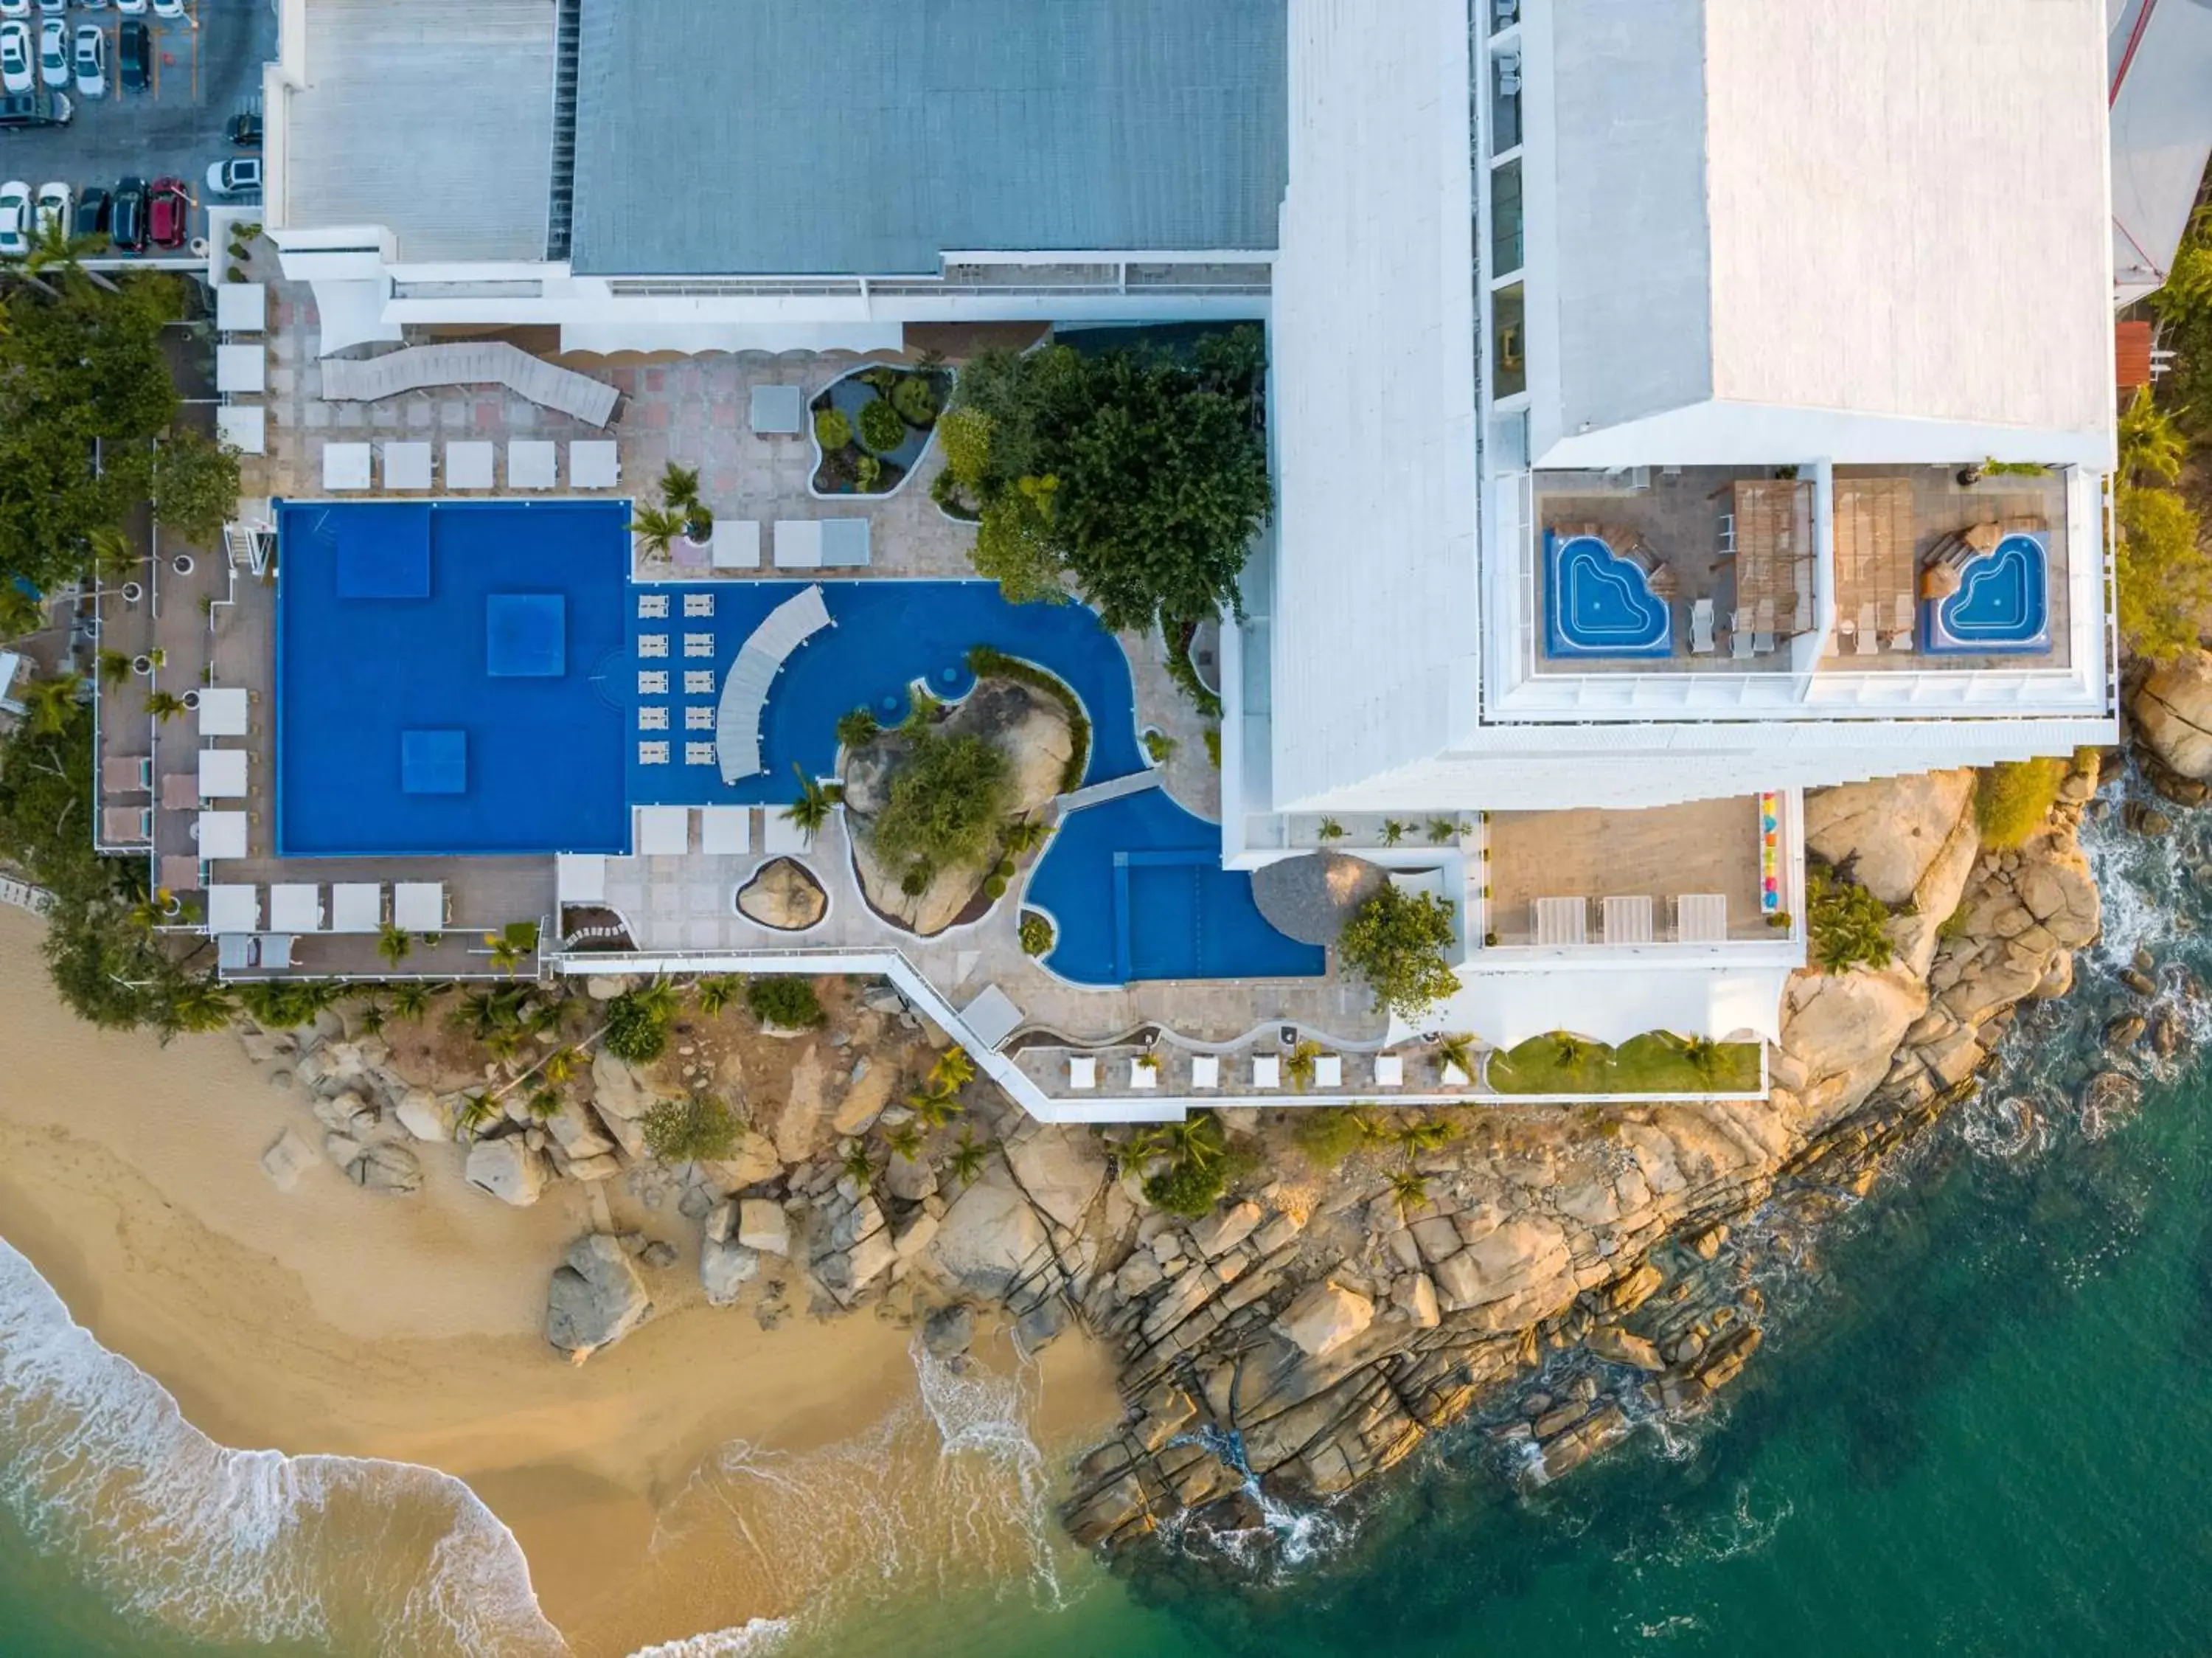 Property building, Pool View in Fiesta Americana Acapulco Villas